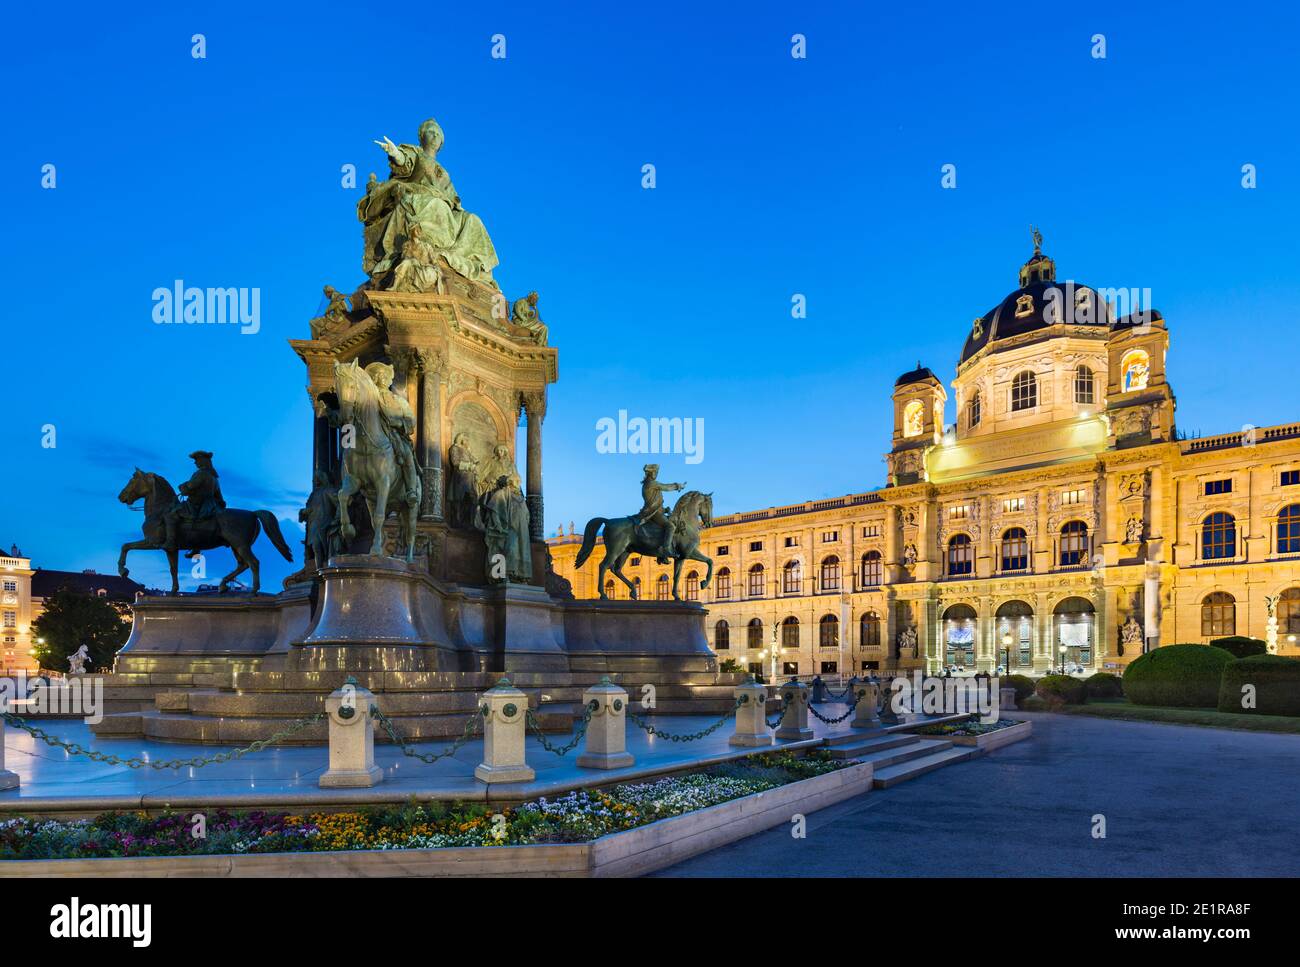 Das Naturhistorische Museum in Wien, Österreich bei Nacht mit der Maria-Theresa-Statue links. Stockfoto